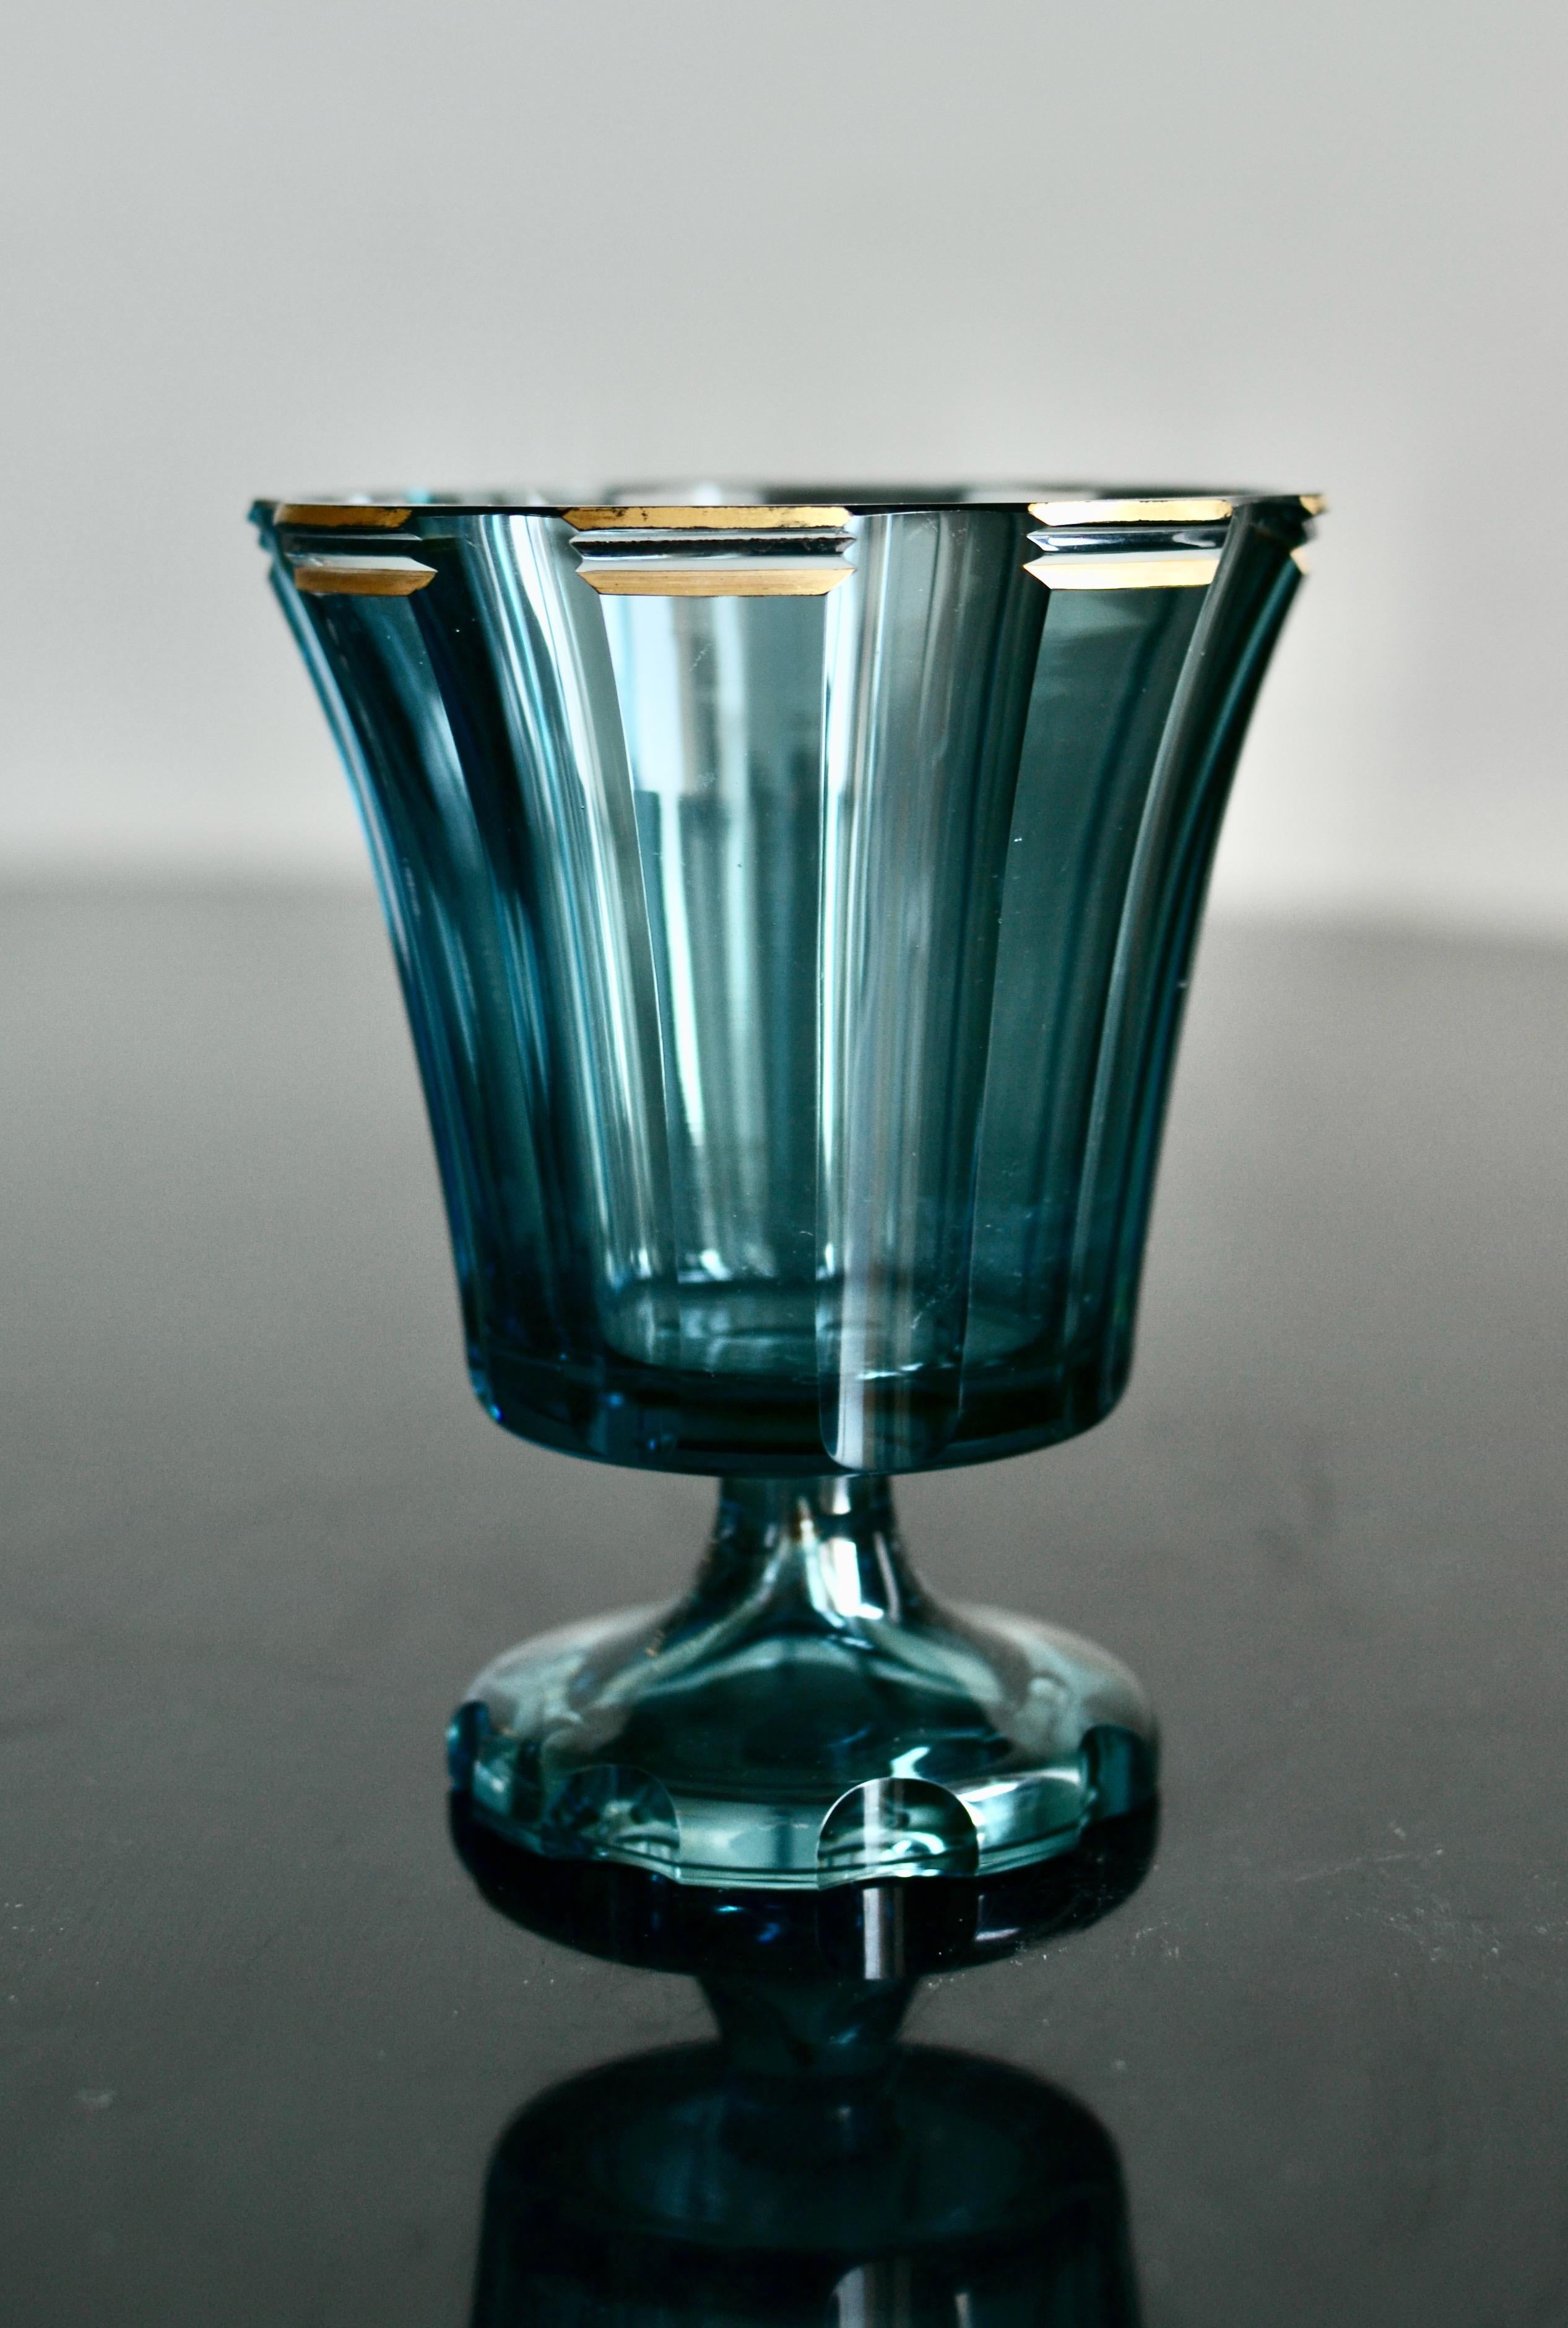 Eine sehr schöne blaugefärbte Glasschale von Kosta aus den späten 1920er Jahren nach einem Entwurf von Elis Bergh (1881-1954). Signiert B305 Kosta auf dem Boden. Sehr guter Zustand. 

Elis Bergh war ein Architekt und Designer, der vor allem durch